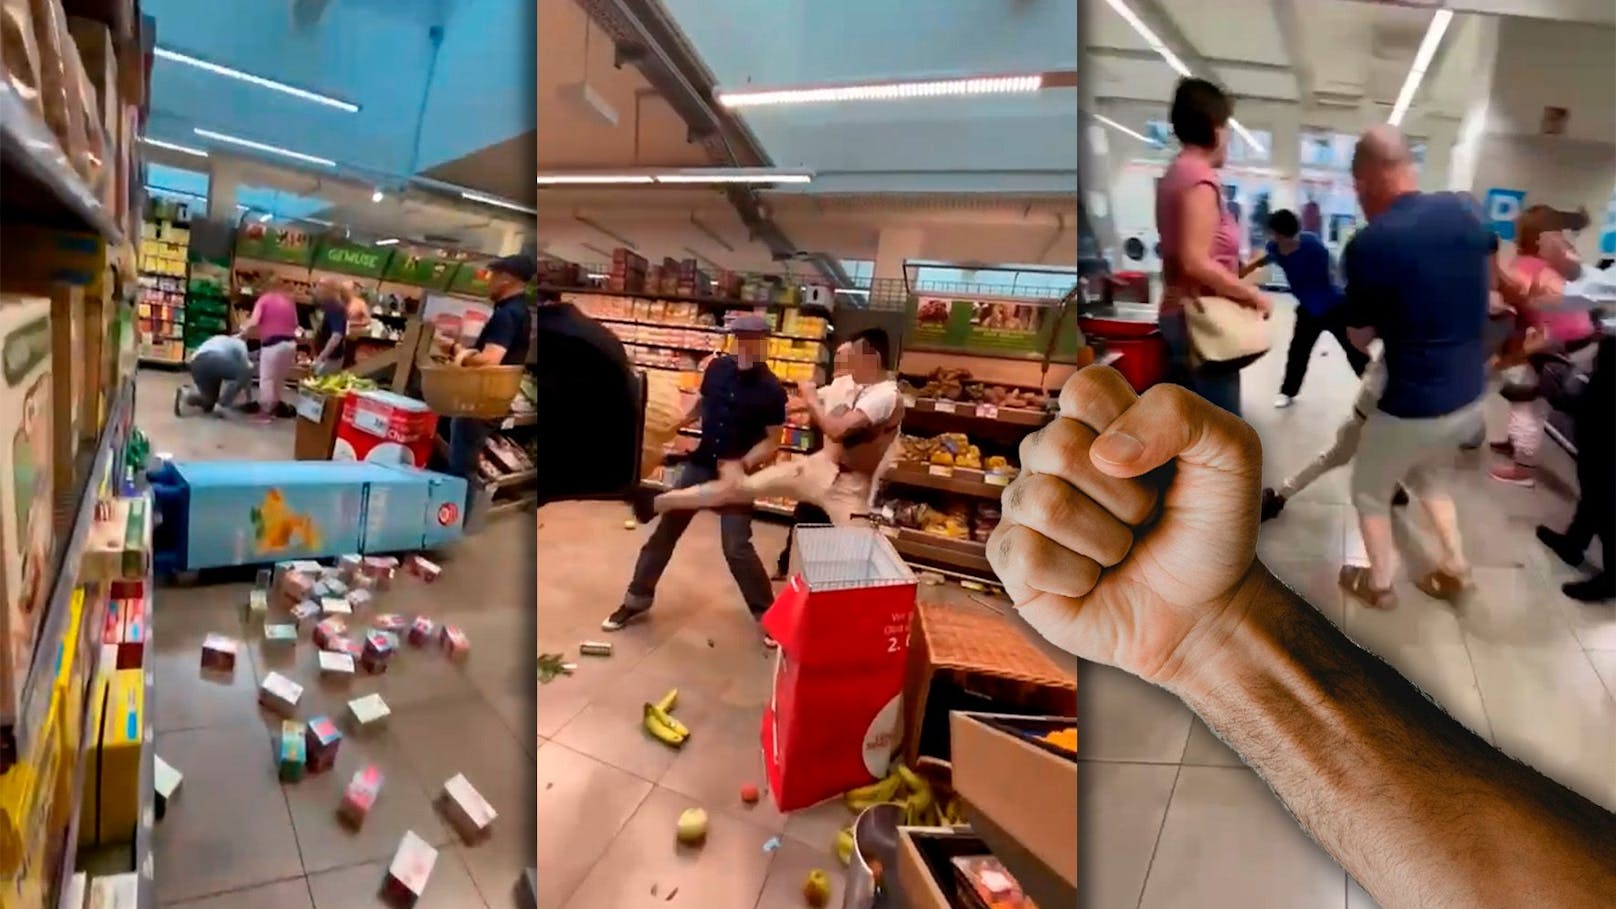 FPÖ-Mann in Supermarkt von Männern niedergeprügelt